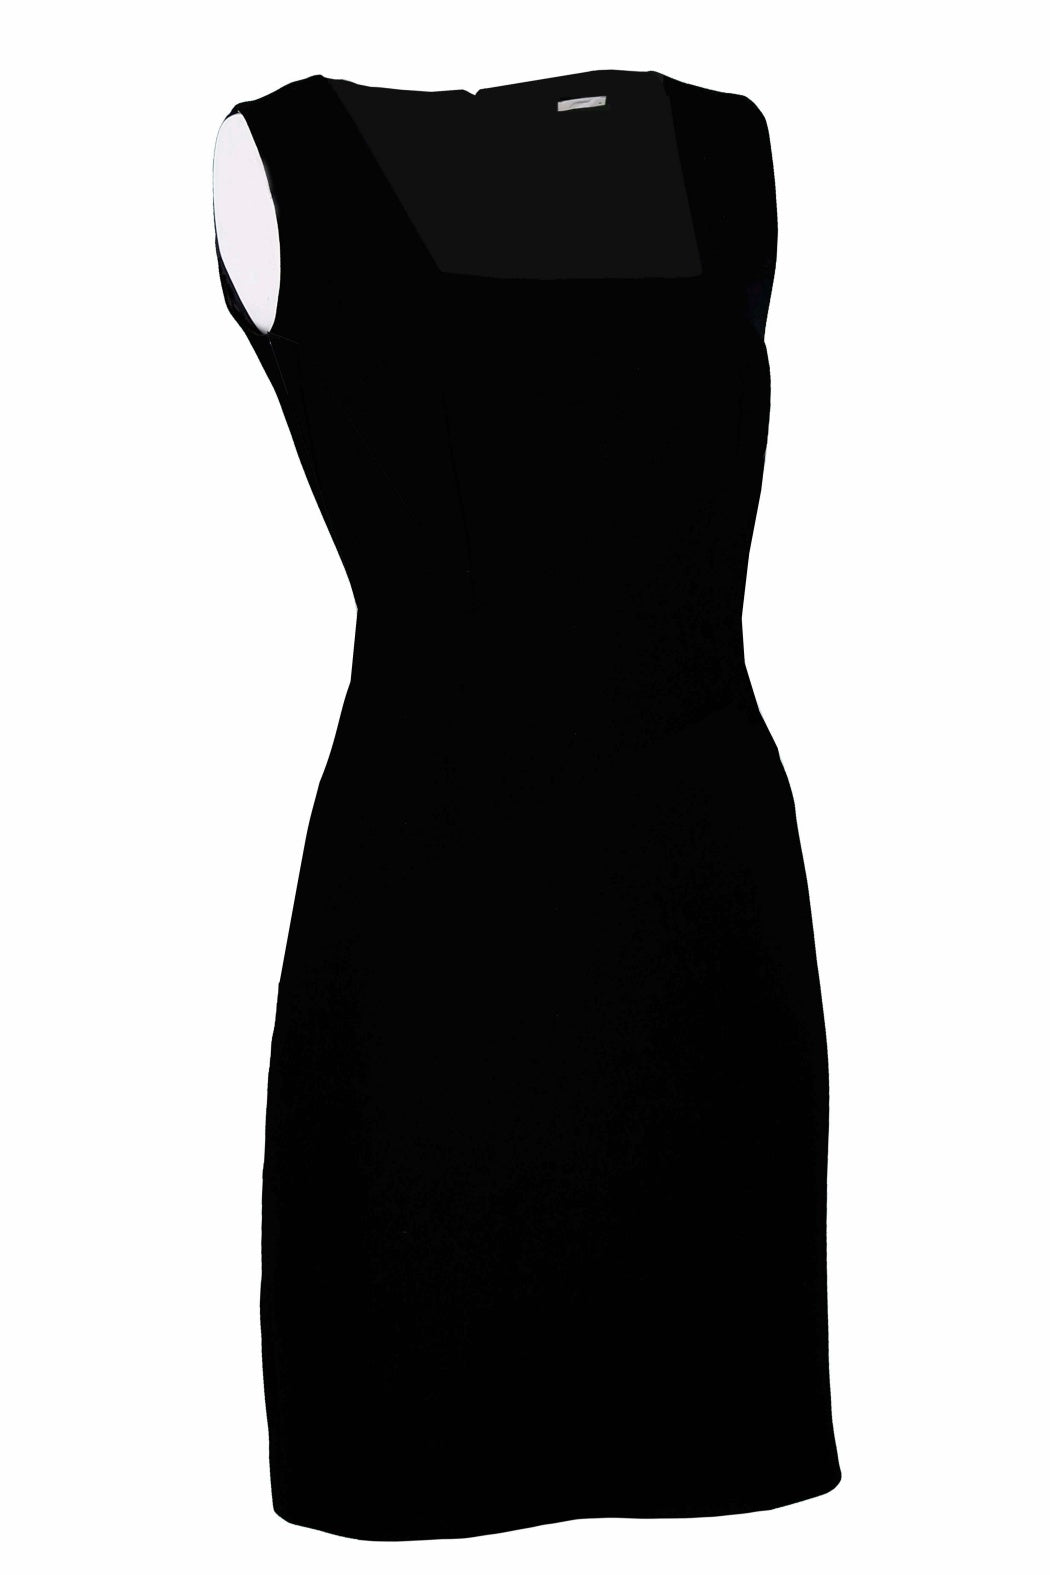 Belle Siyah Kare Yakalı Mini Krep Elbise